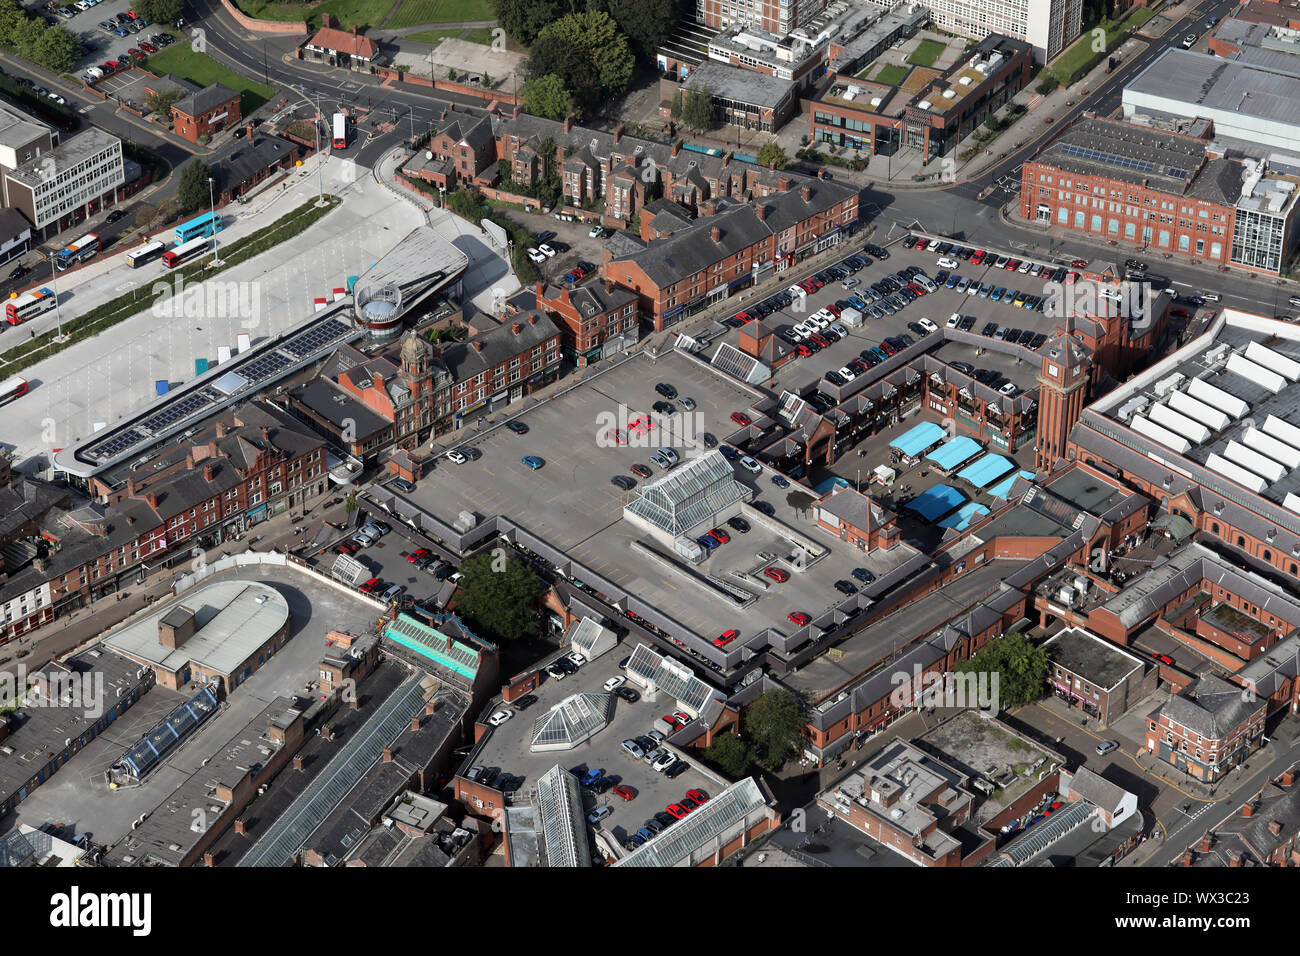 Vue aérienne du centre commercial The Galleries dans le centre-ville de Wigan, Lancashire, UK Banque D'Images